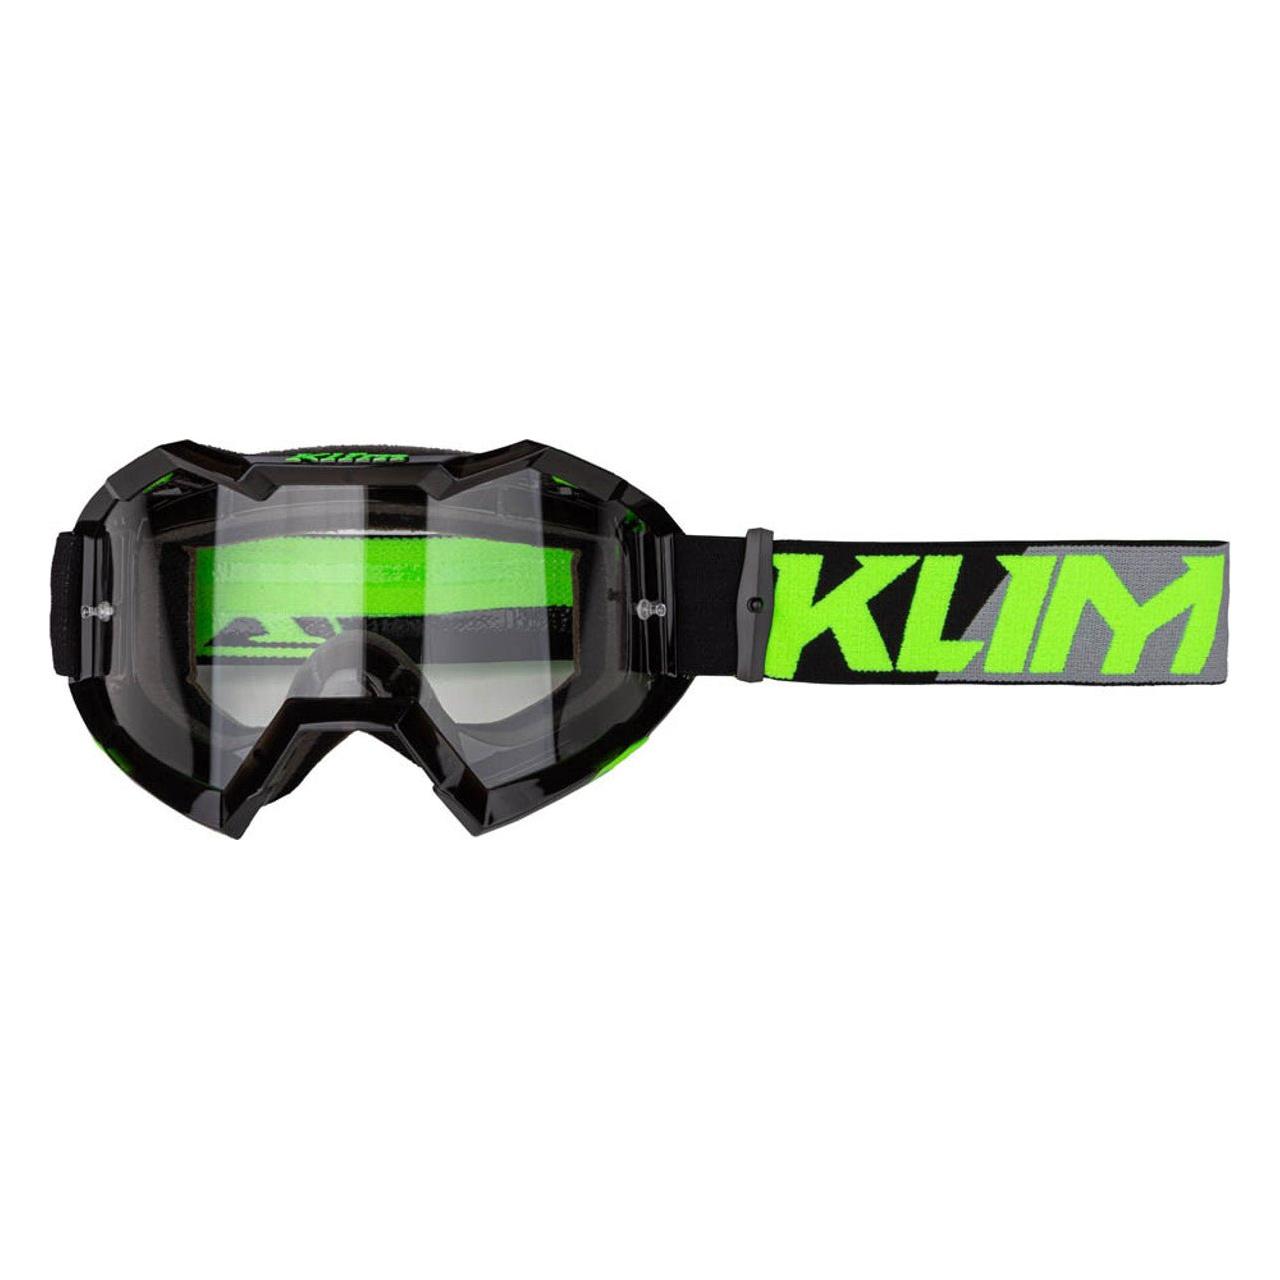 Klim masque off-road Viper - EdTools